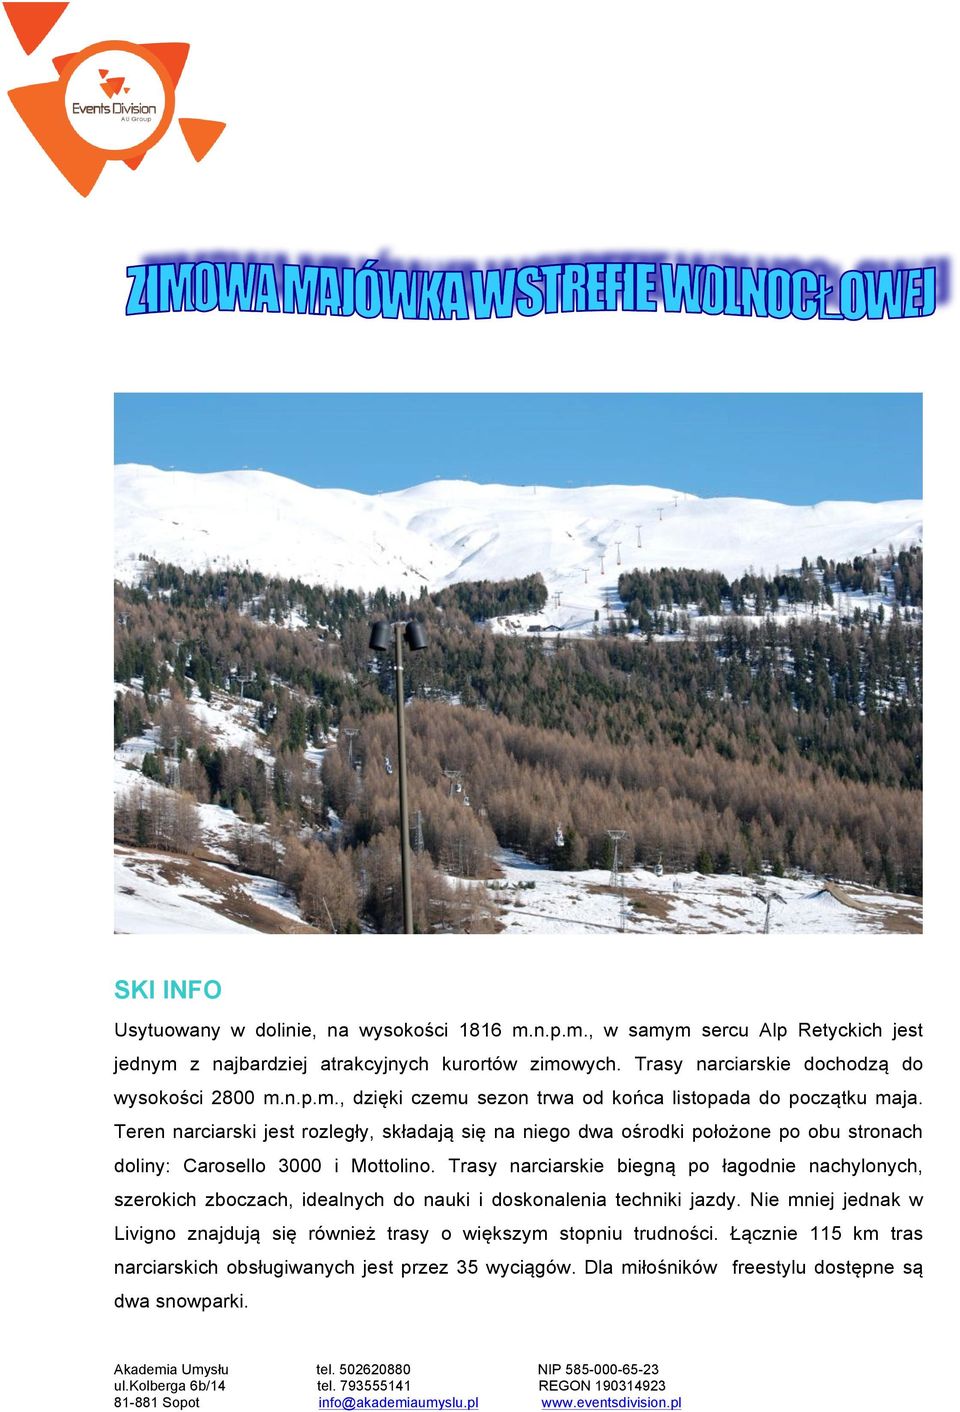 Teren narciarski jest rozległy, składają się na niego dwa ośrodki położone po obu stronach doliny: Carosello 3000 i Mottolino.